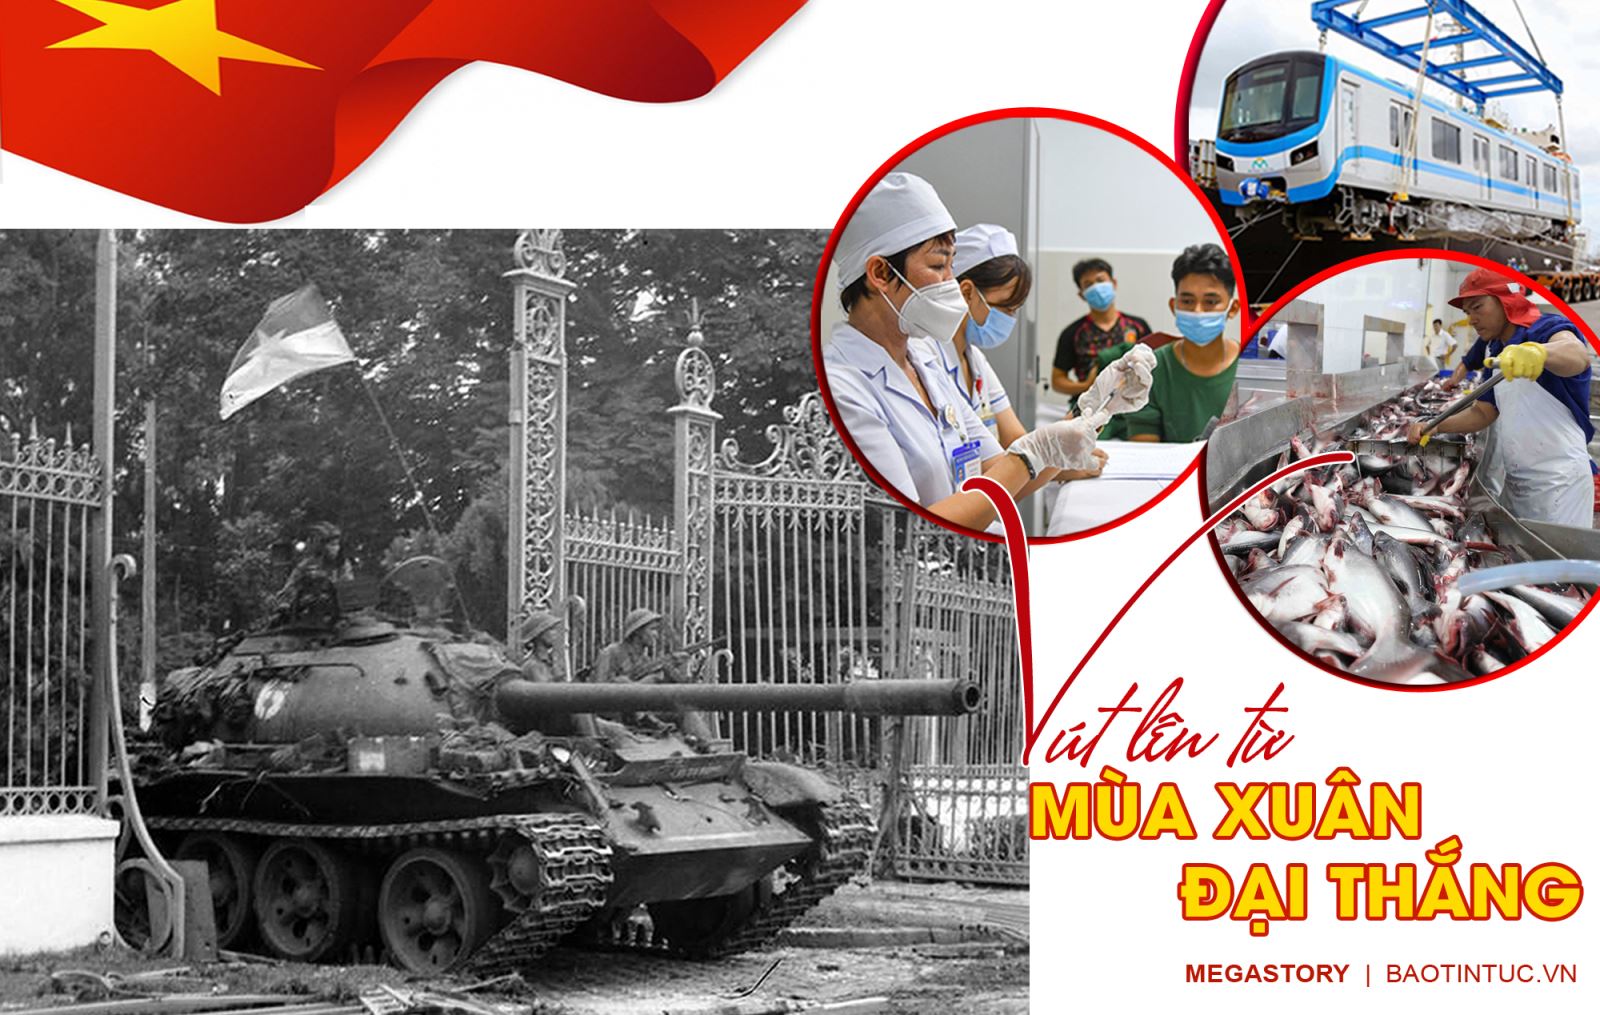 Mùa xuân đại thắng đã trở thành một trong những biểu tượng của sự thịnh vượng và thành công trong lịch sử Việt Nam. Với sự phát triển vượt bậc của đất nước trong những năm qua, chúng ta đang chứng kiến những thành công đáng kinh ngạc. Những hình ảnh liên quan đến mùa xuân đại thắng sẽ giúp người xem cảm nhận được sự ủng hộ và cổ vũ cho sự phát triển của đất nước.